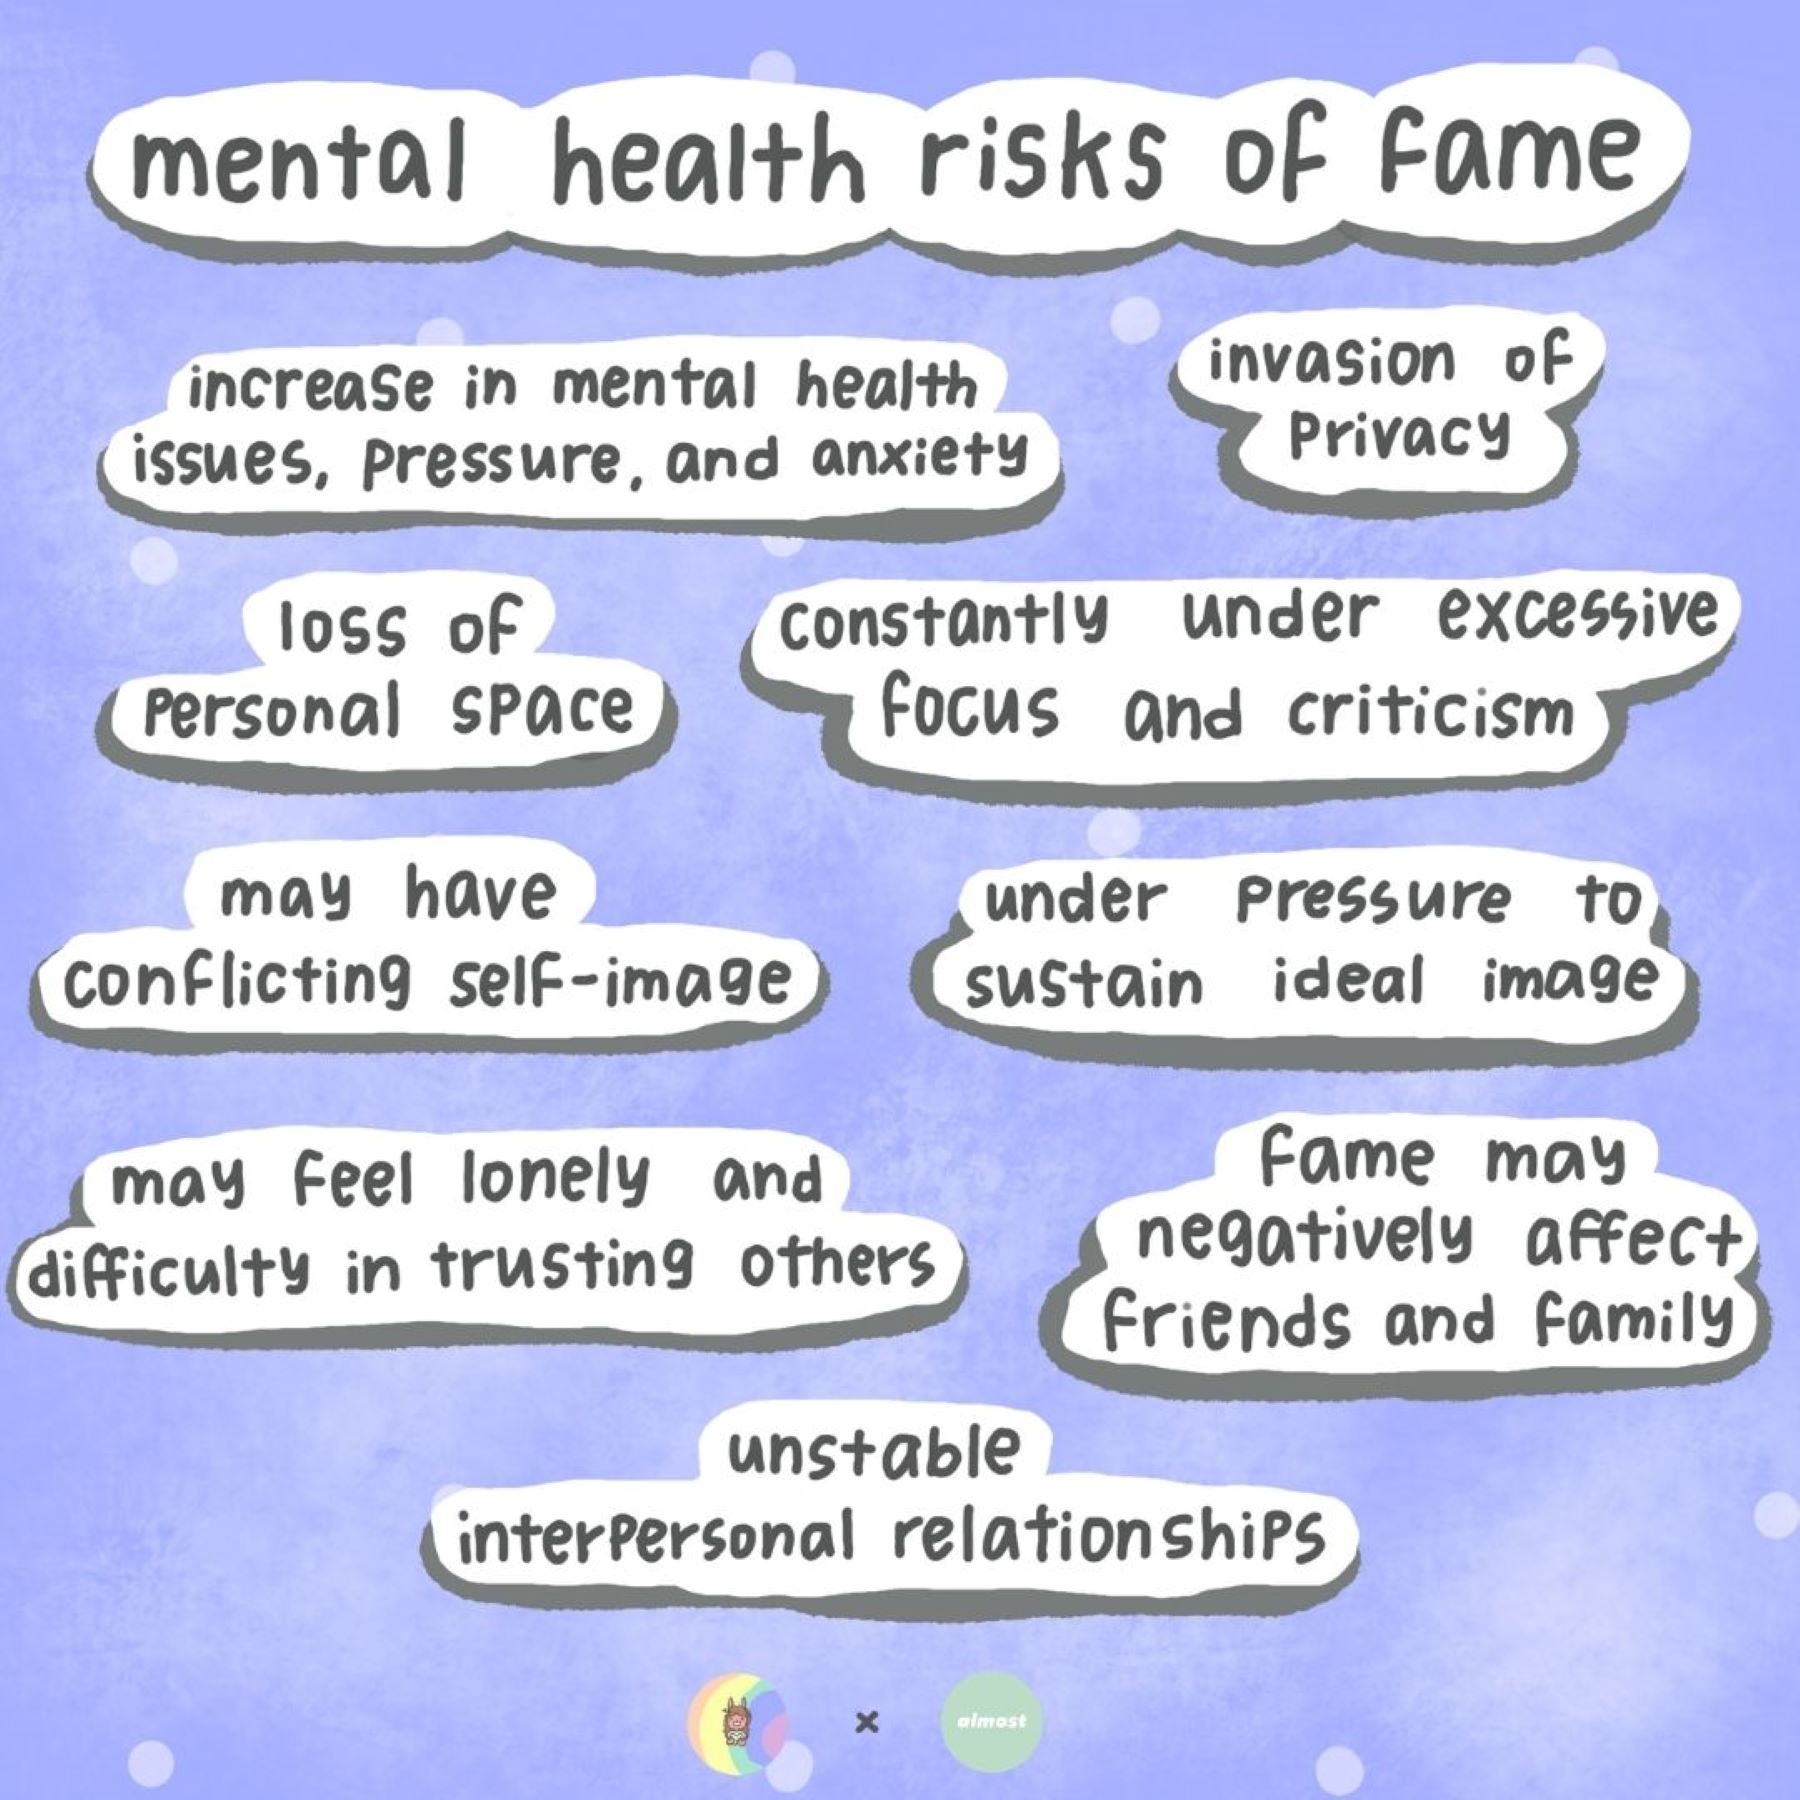 mental health risks of fame